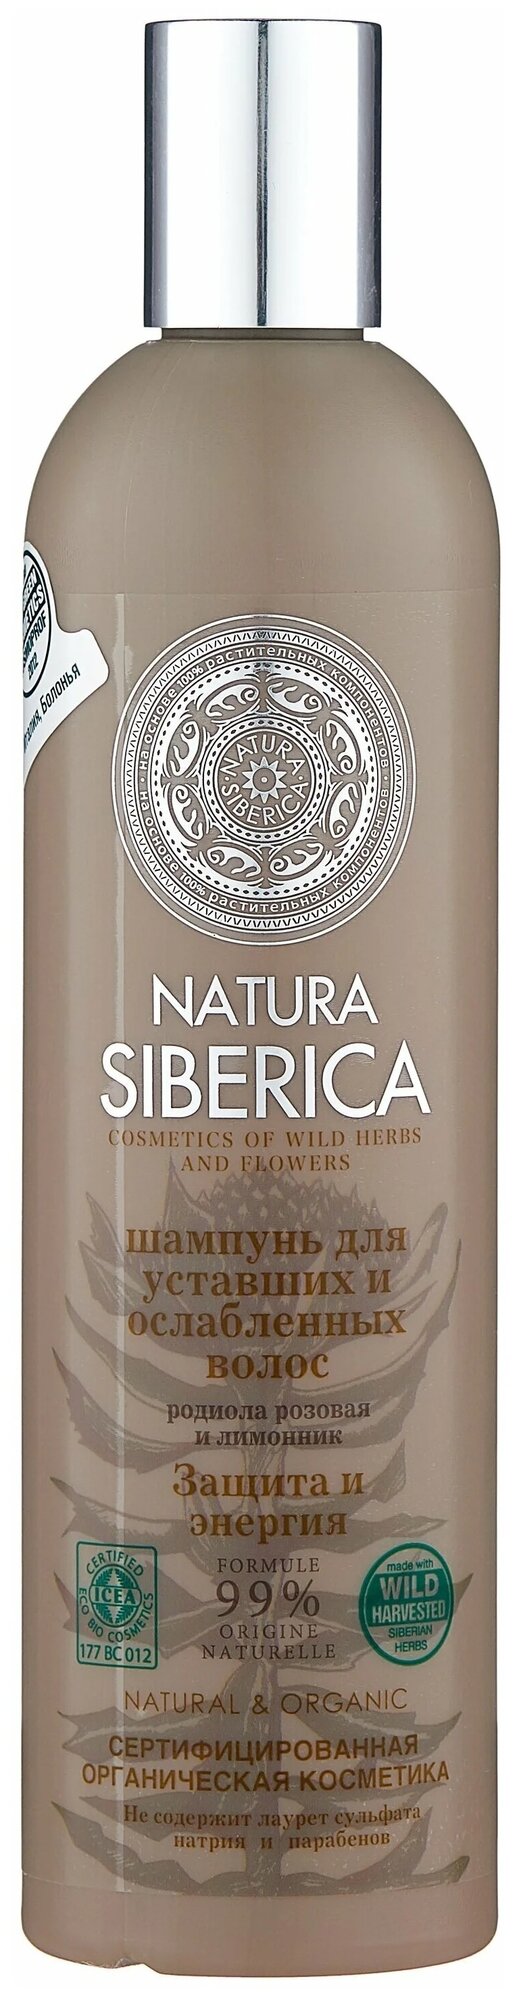 Natura Siberica Шампунь для уставших и ослабленных волос Защита и энергия 400 мл (Natura Siberica, ) - фото №1